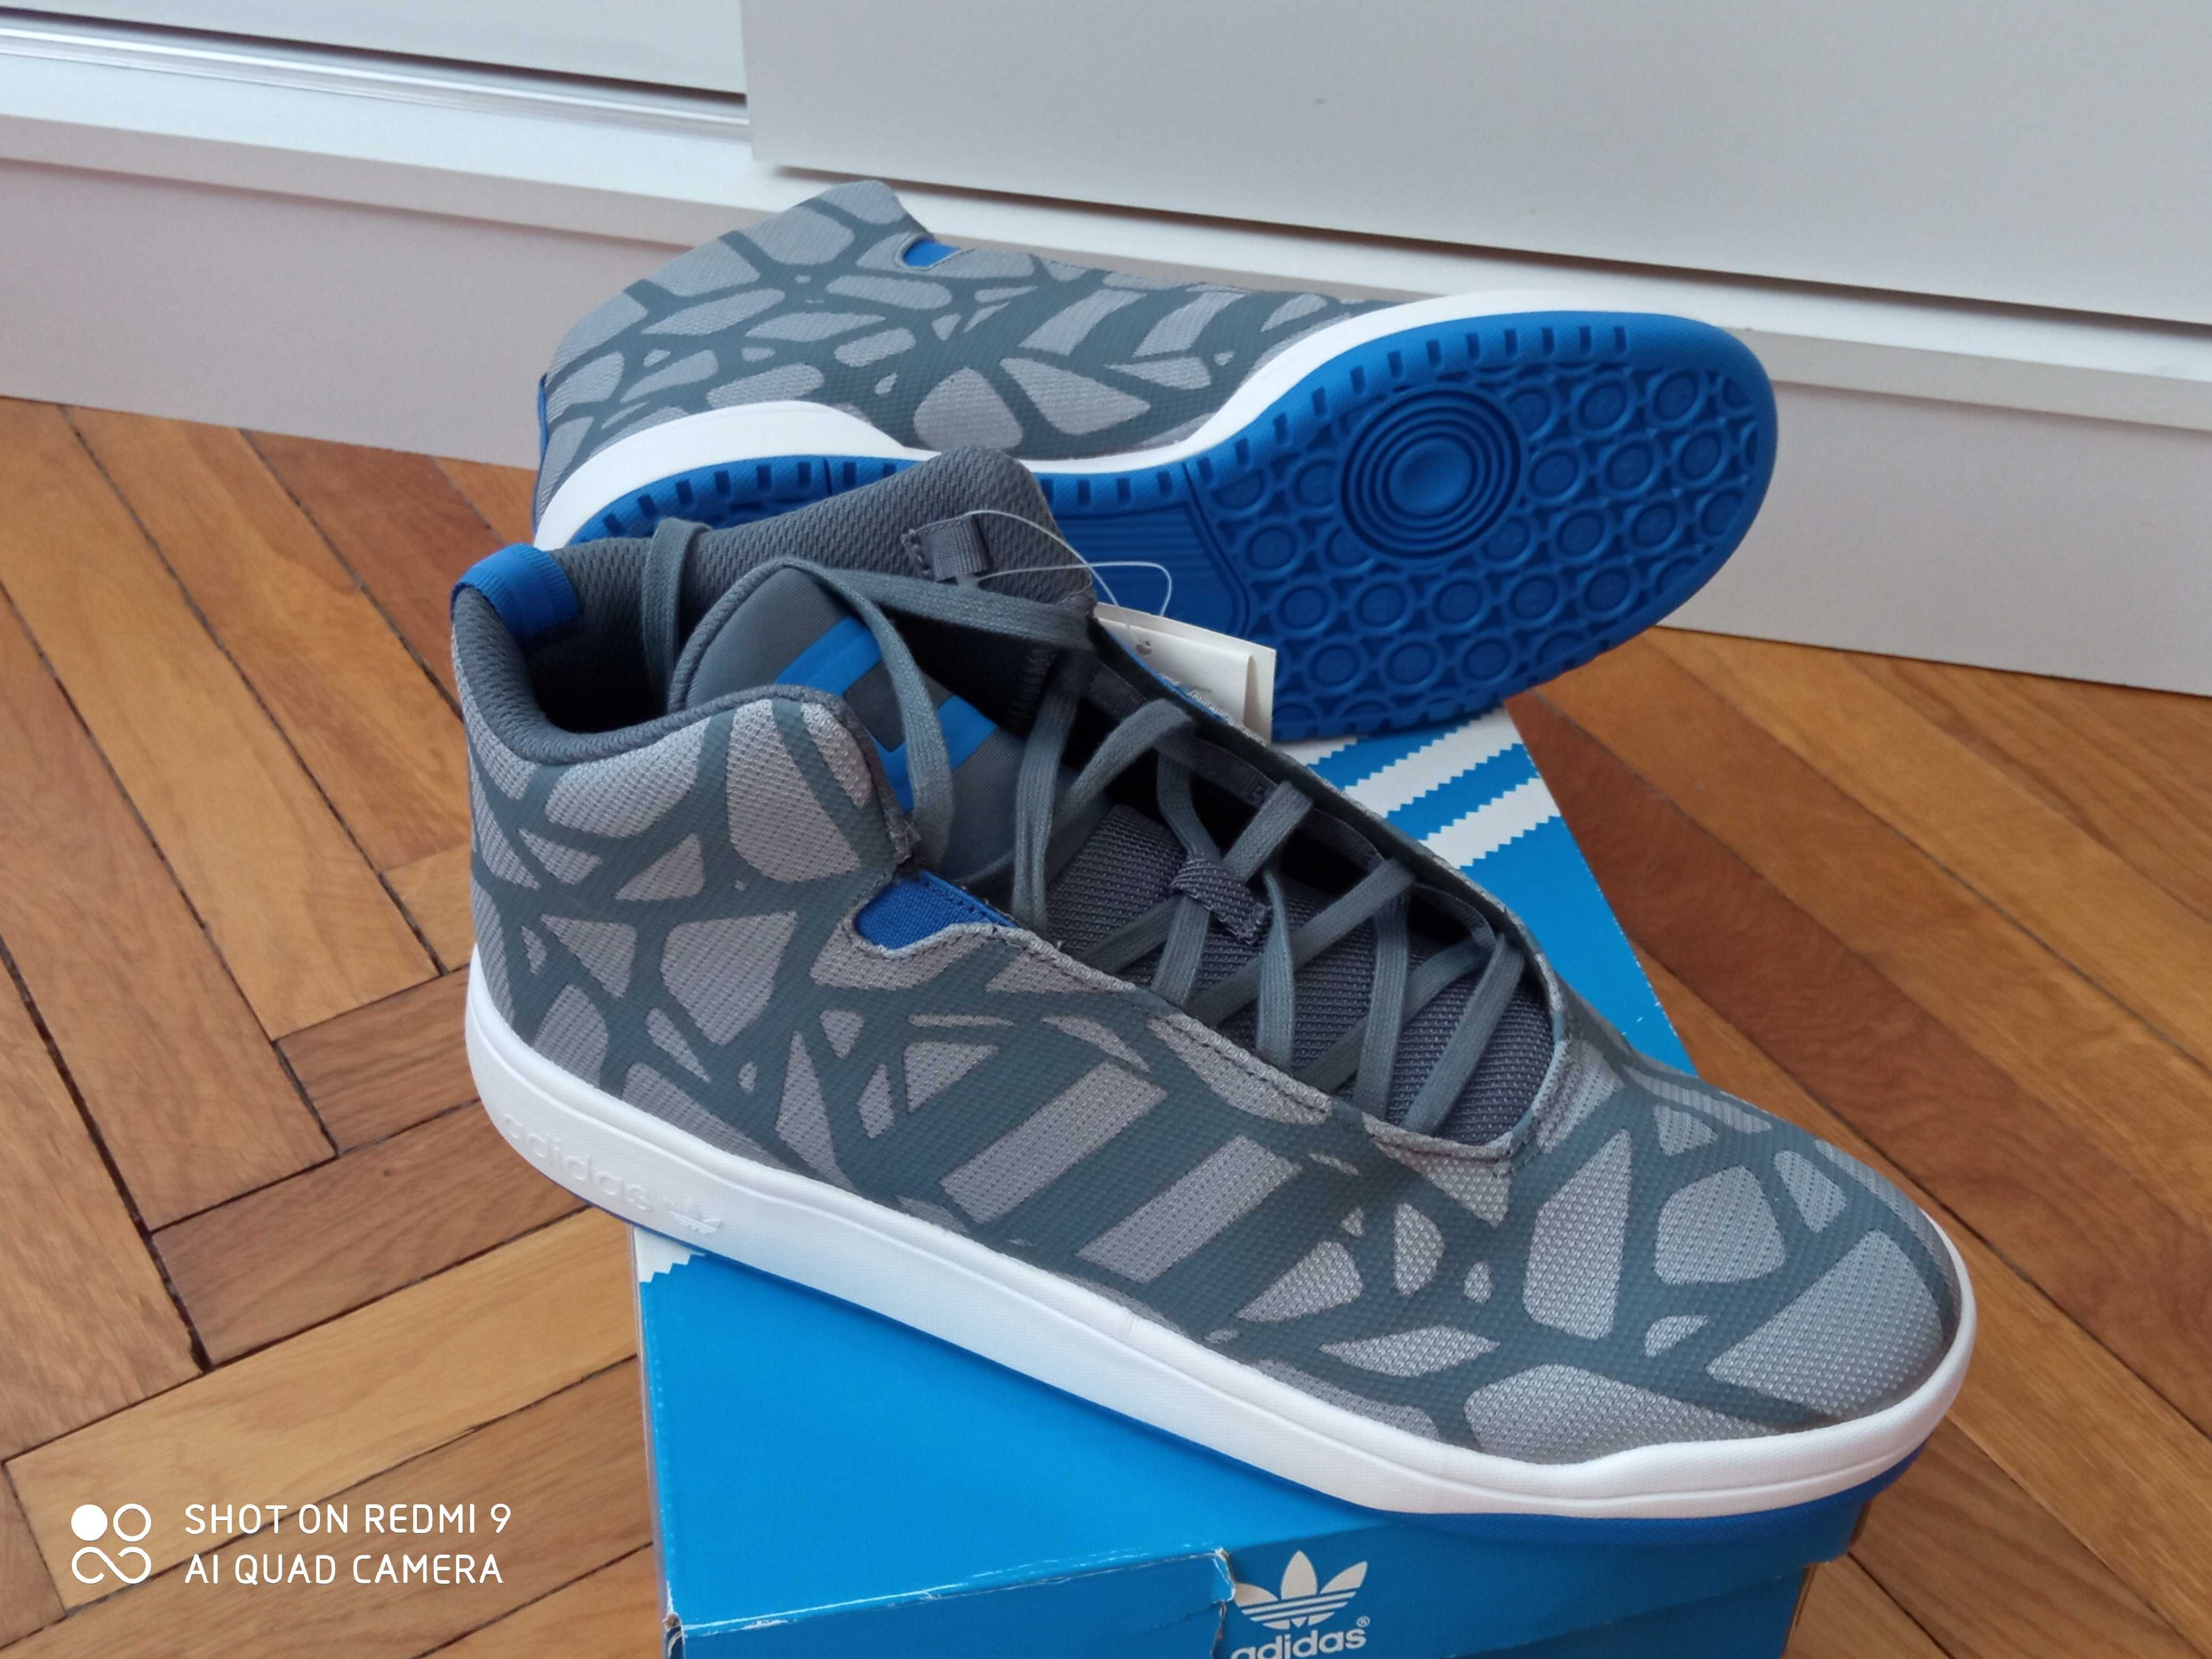 Adidas Oryginals VERITAS 44 -28 cm kicksy jak Nike Air Force 1 MID